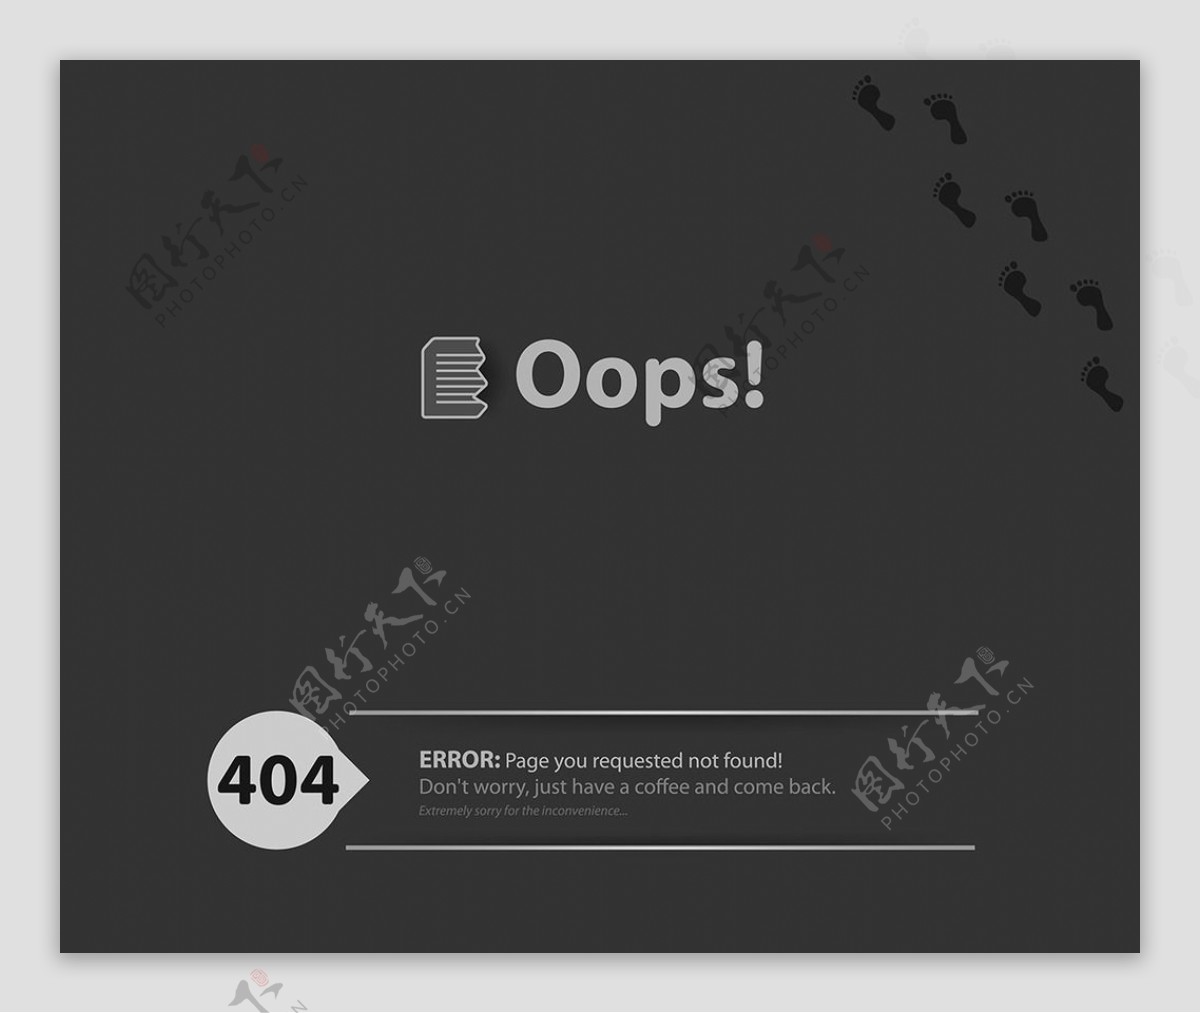 网站404页面崩溃